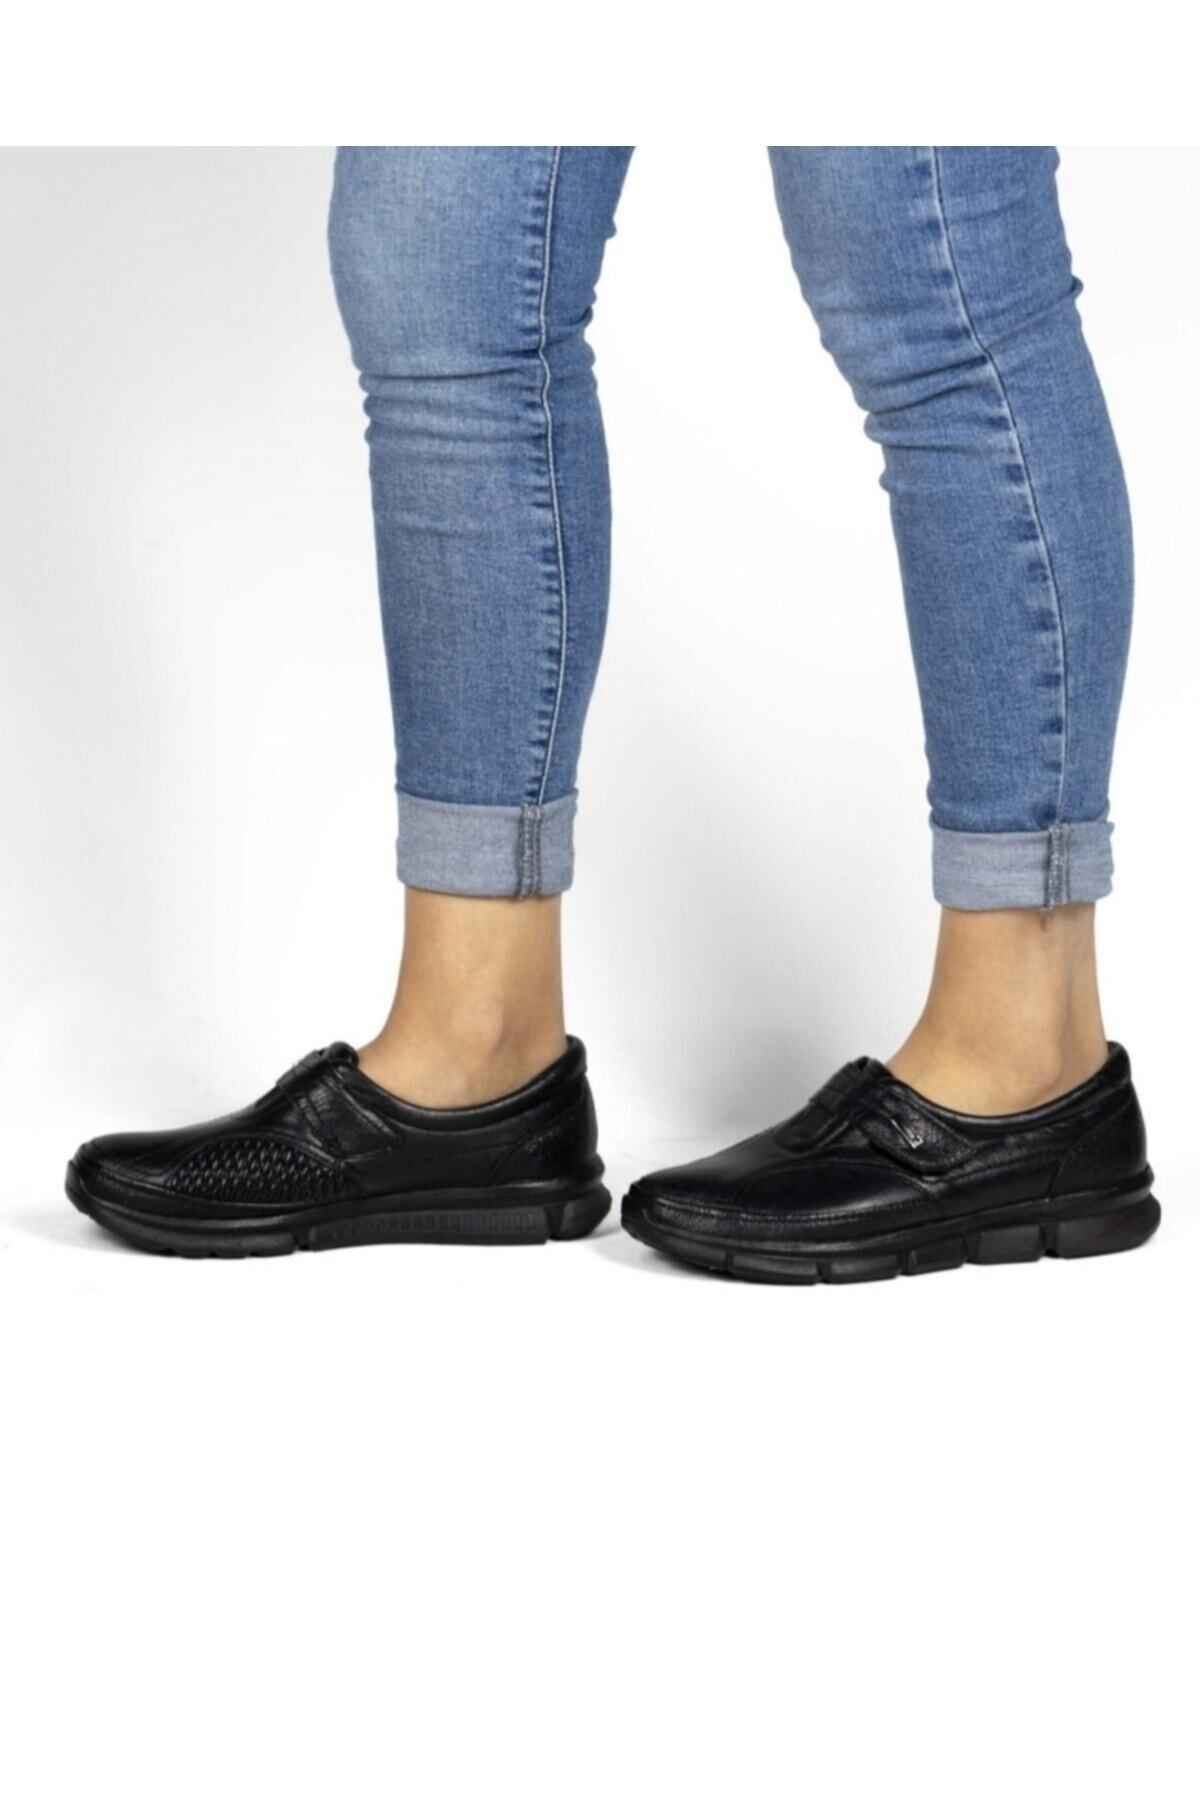 Belox Kadın Hakiki Deri Ortopedik Siyah Kemik Çıkıntısı Ayakkabısı